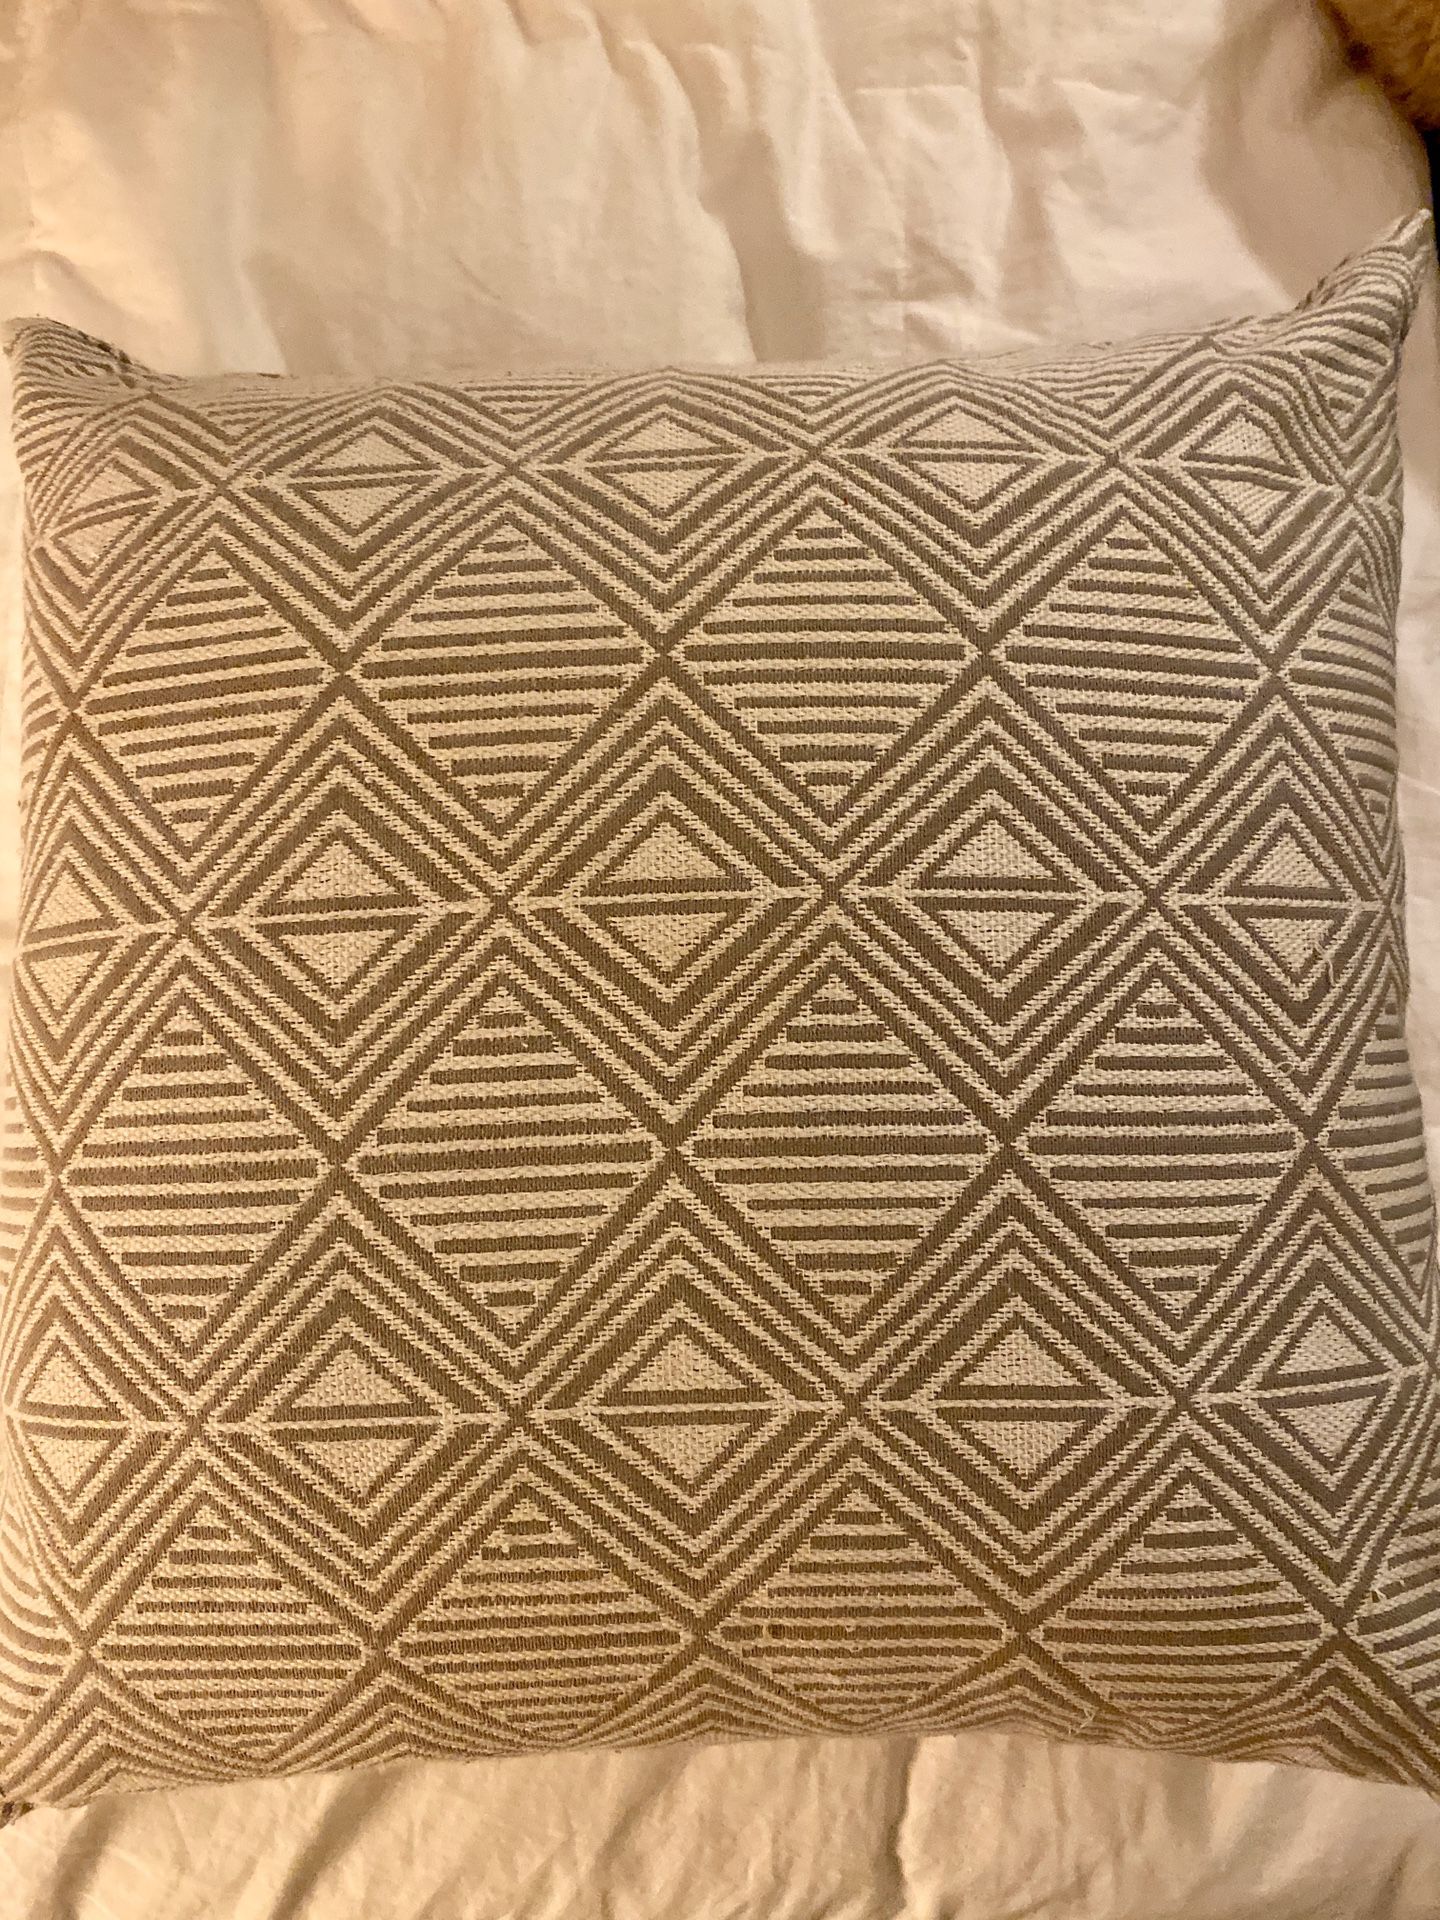 Grey throw pillow